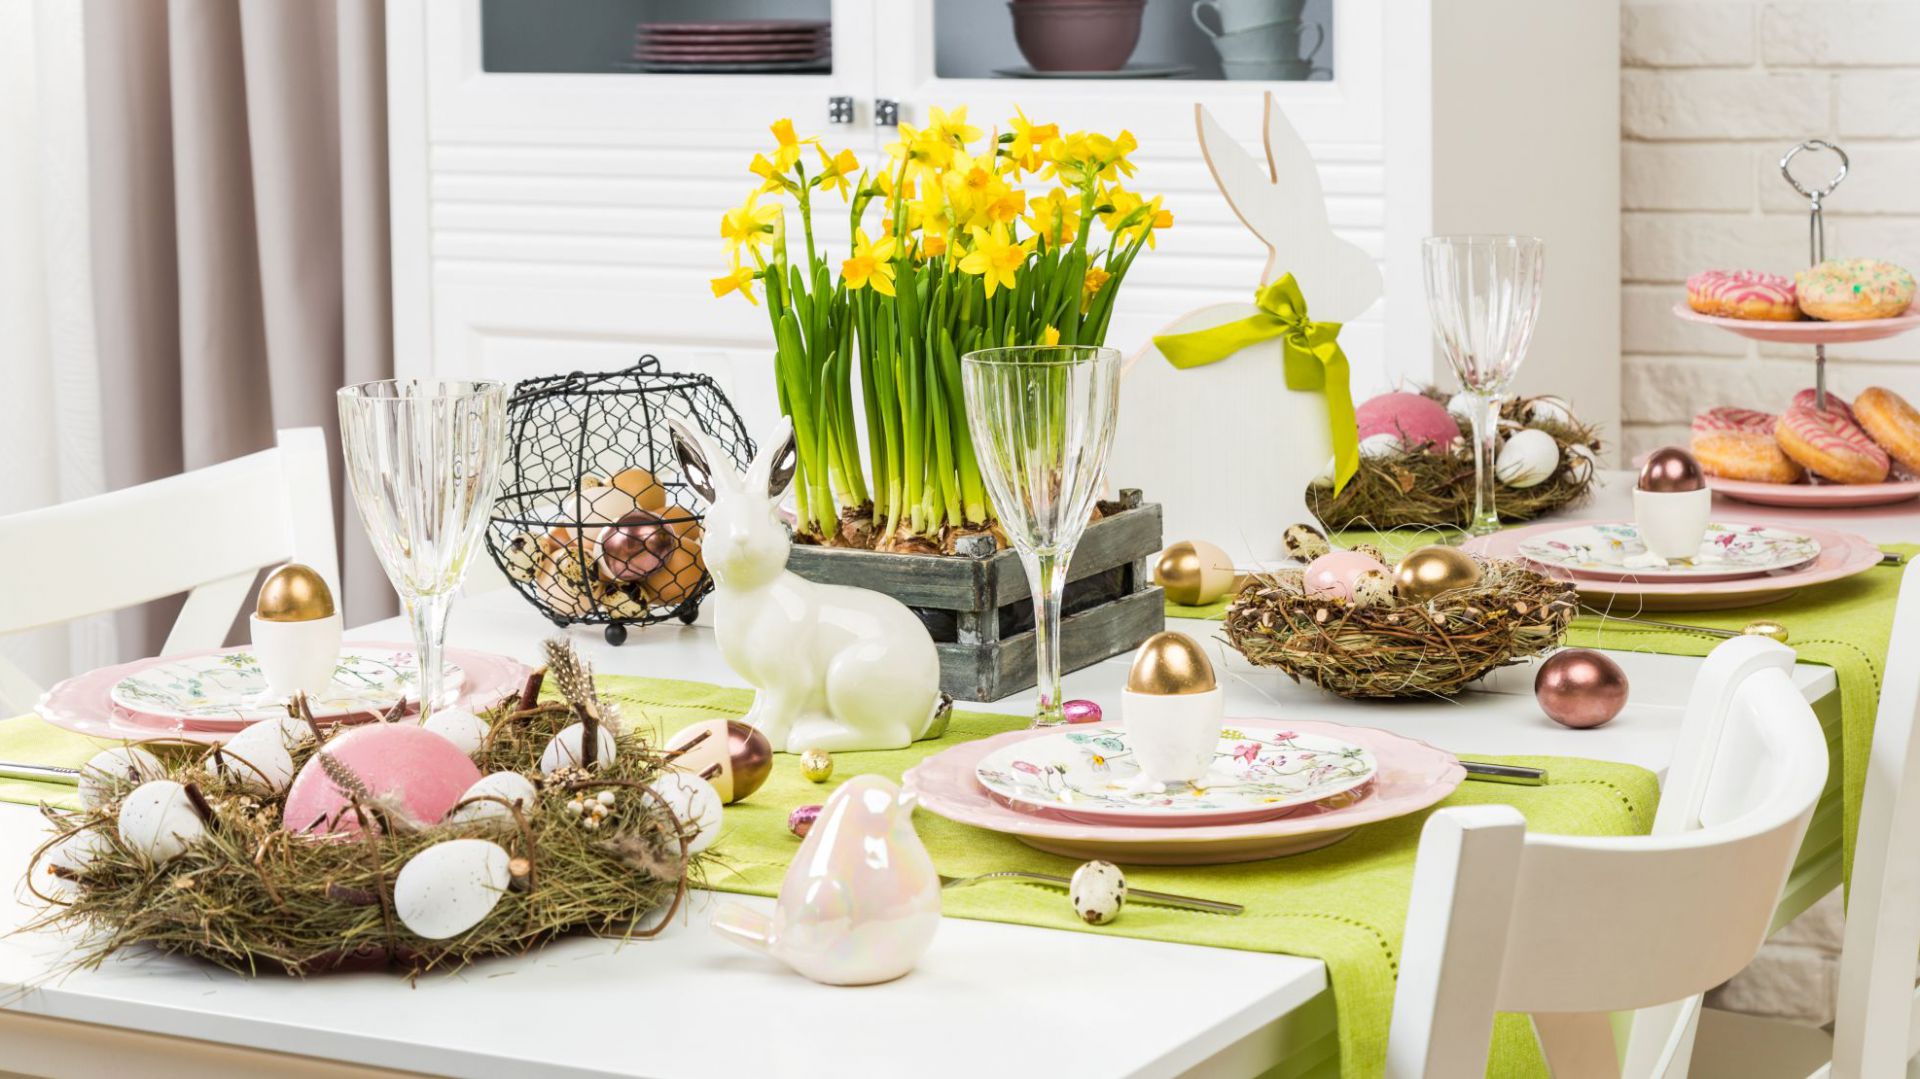 Wielkanocny stół: zobacz ciekawe aranżacje